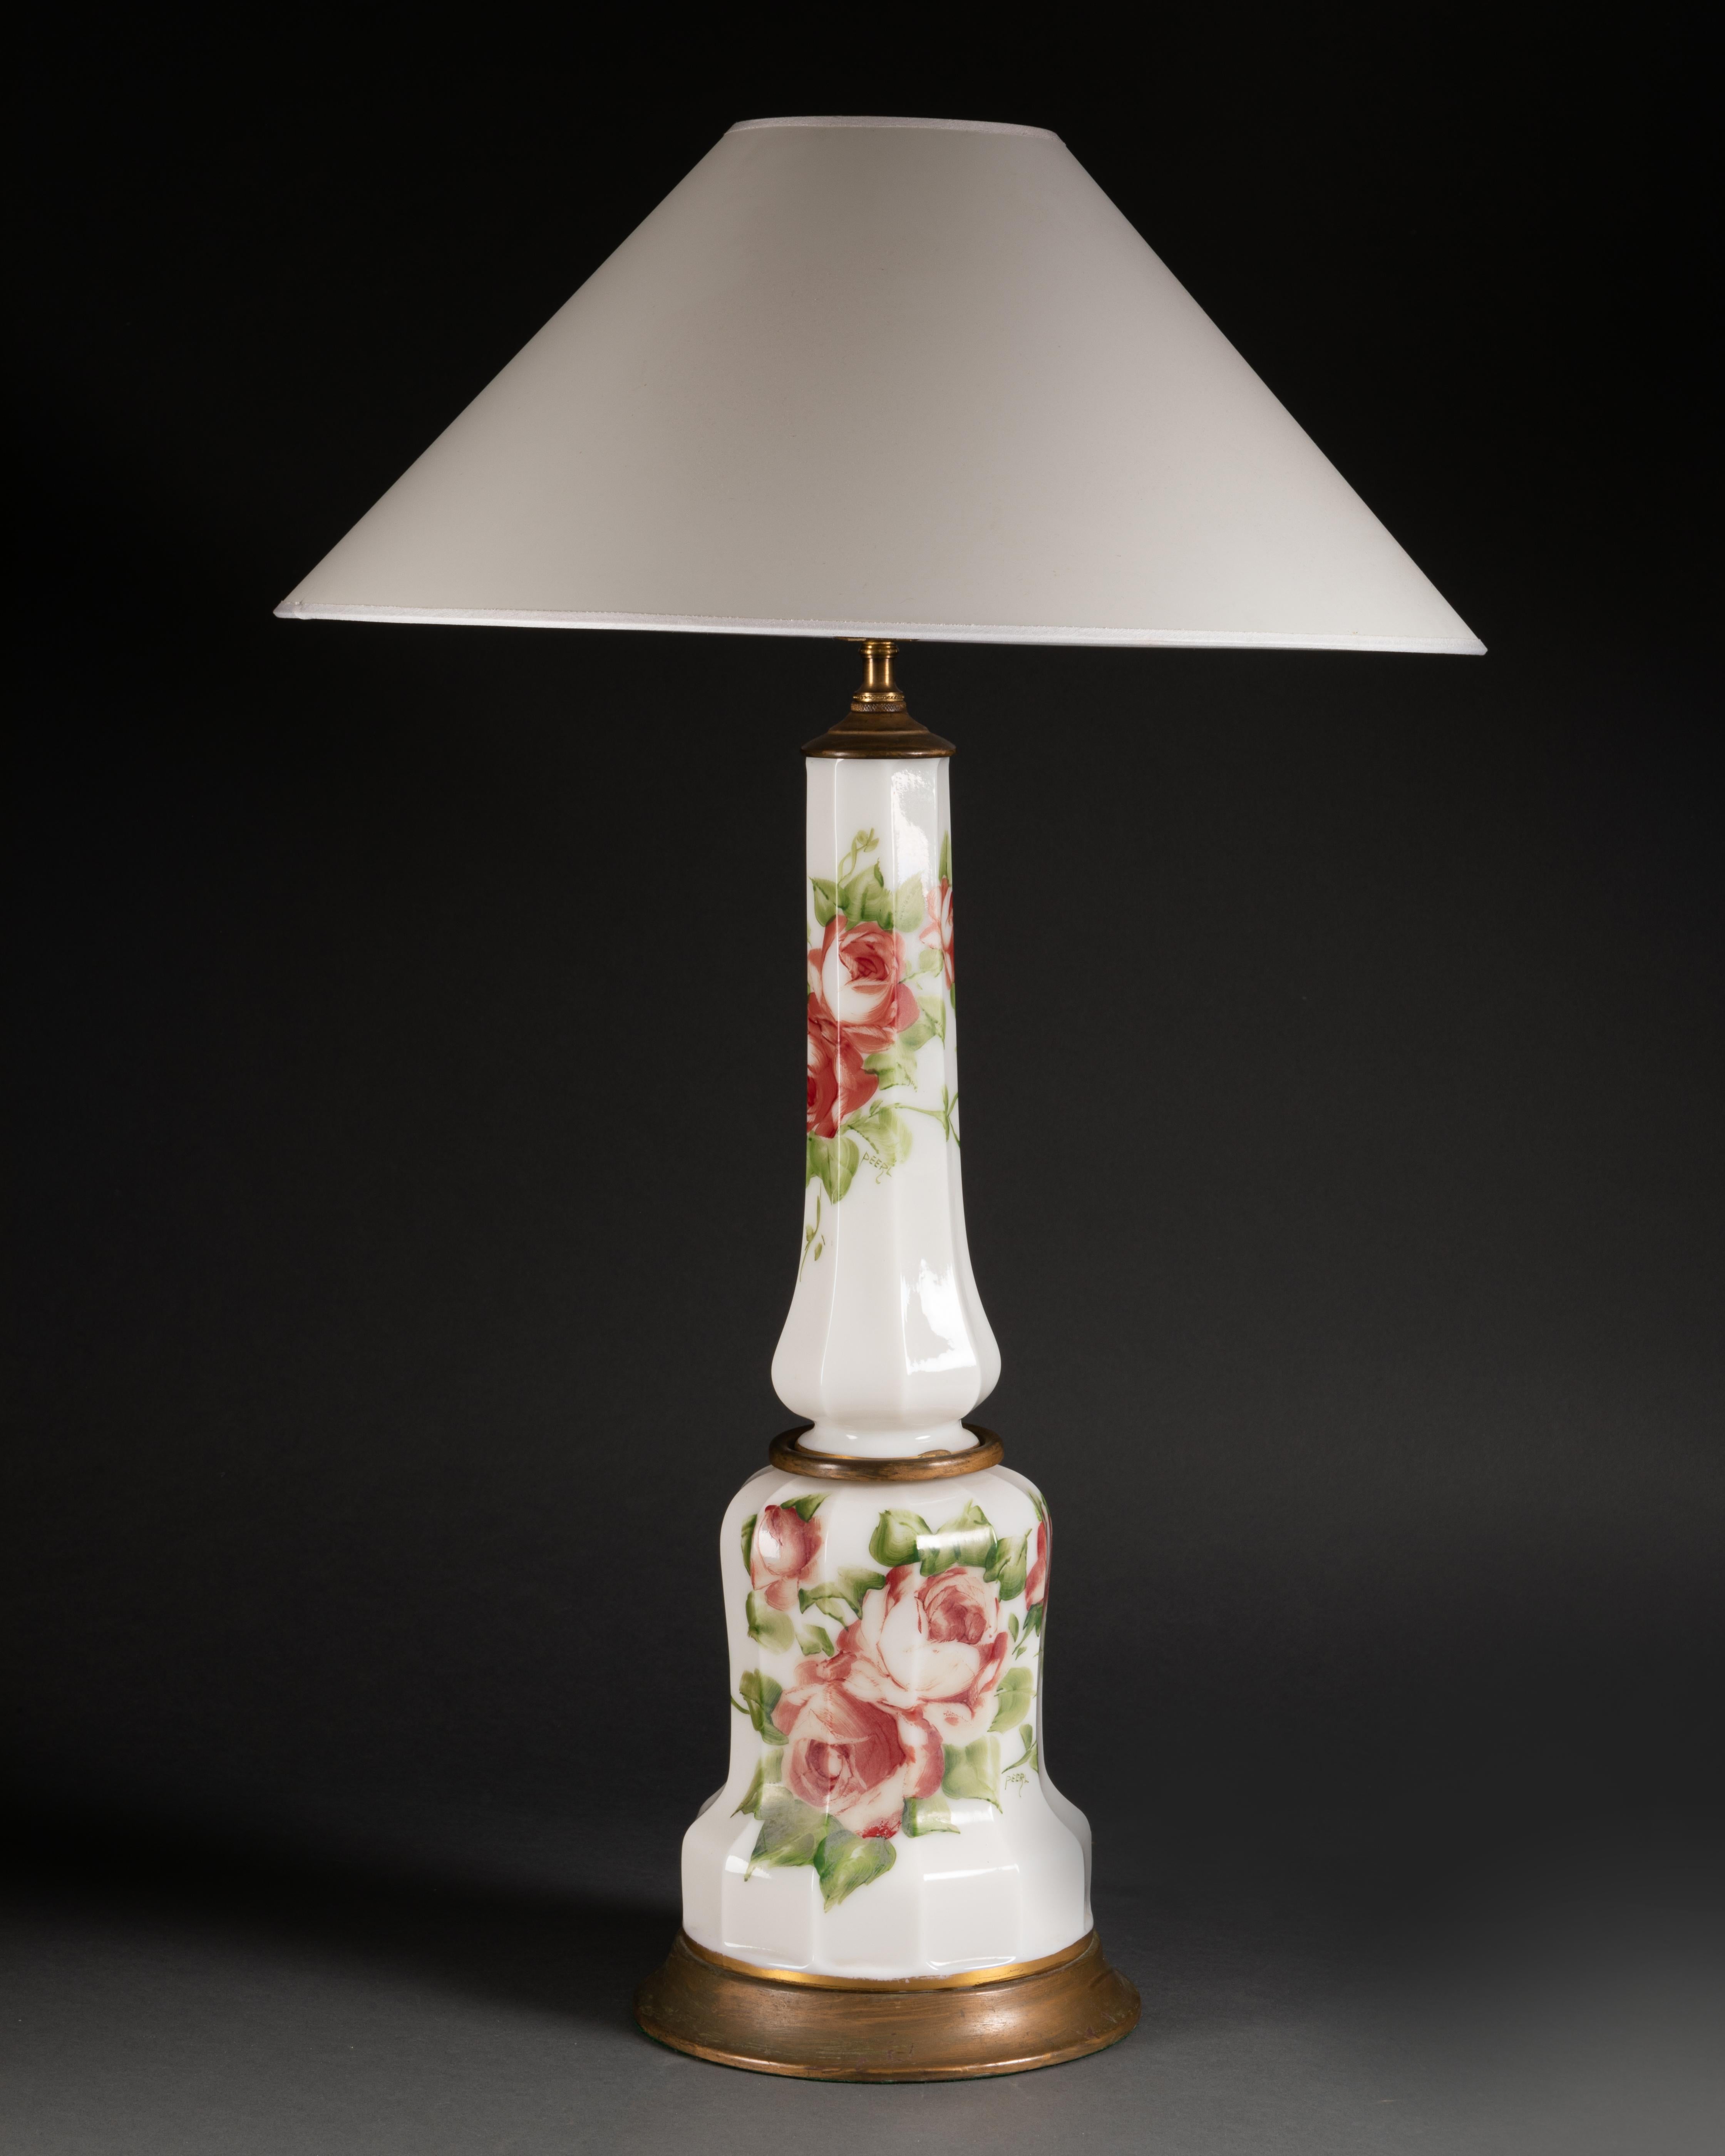 Paire de lampes en verre blanc superposé avec des roses peintes à la main. Français ou anglais, vers 1920. Câblé selon la norme européenne. Vendu avec ou sans abat-jour. Hauteur jusqu'à la prise 60 cm.